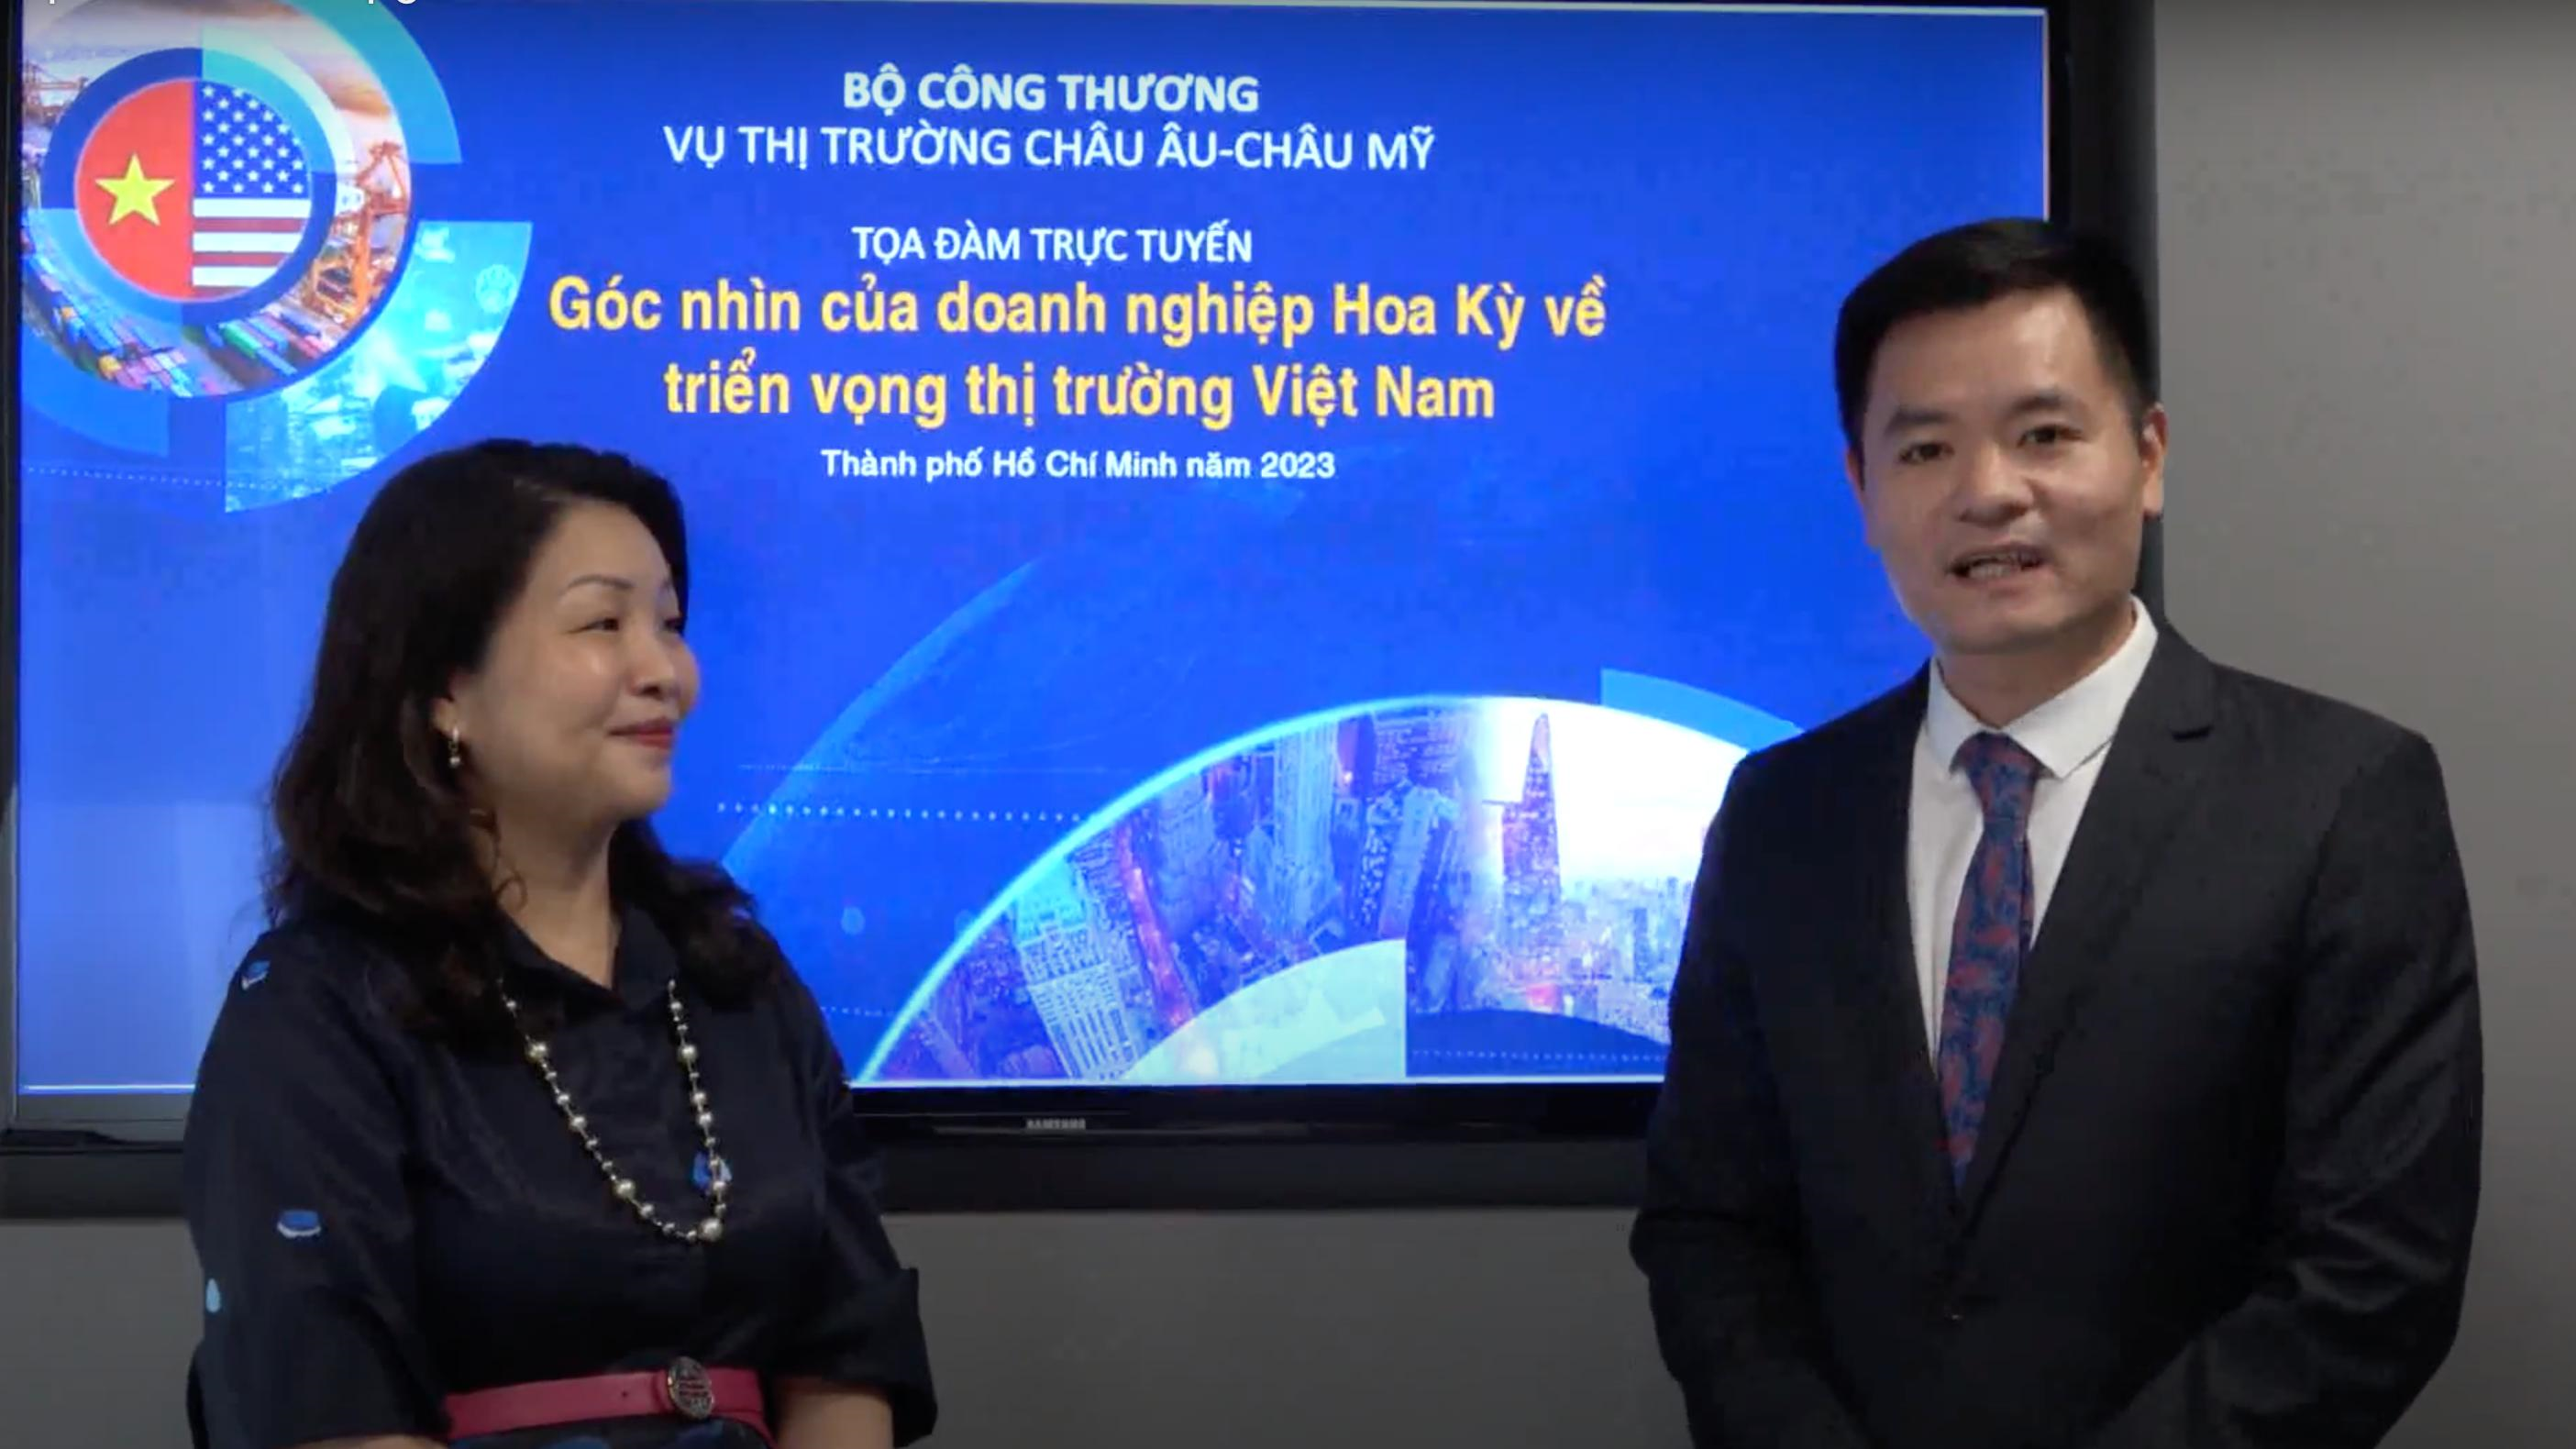 Góc nhìn của doanh nghiệp và chuyên gia Hoa Kỳ triển vọng của Việt Nam trong thời gian tới